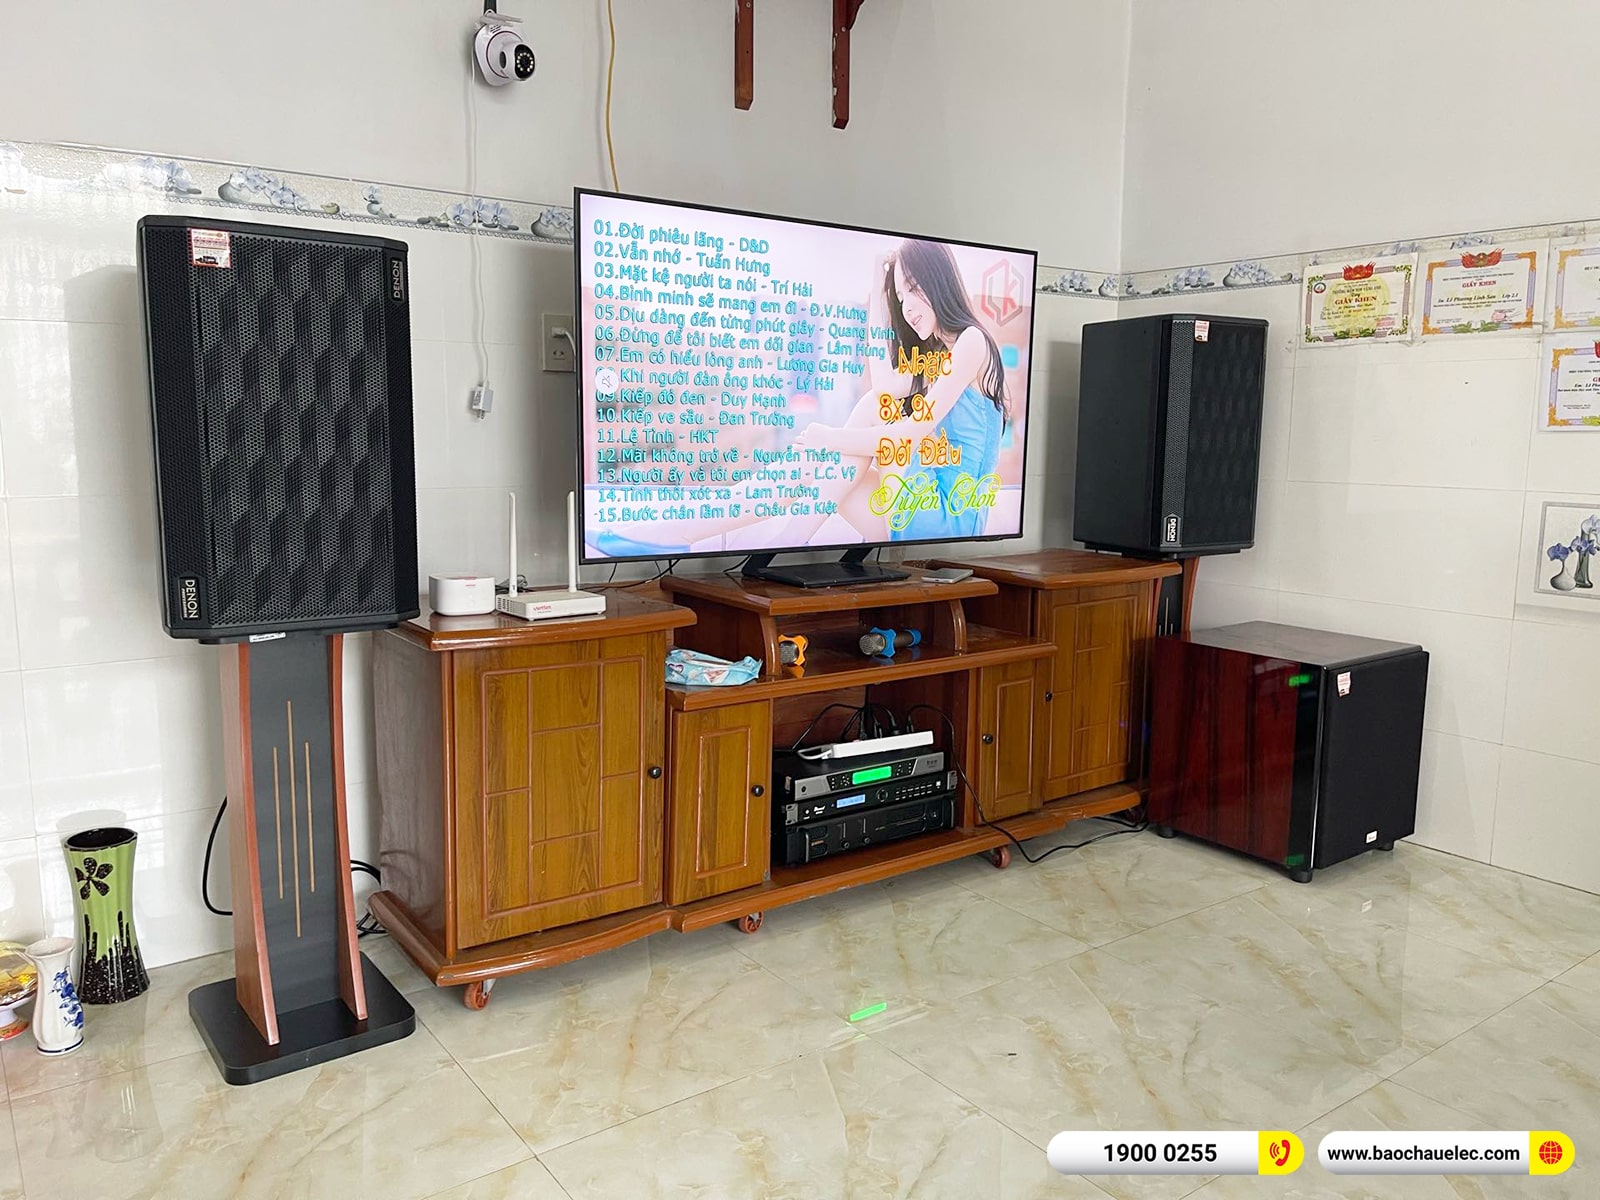 Lắp đặt dàn karaoke Denon hơn 41tr cho anh Tú tại Đồng Nai